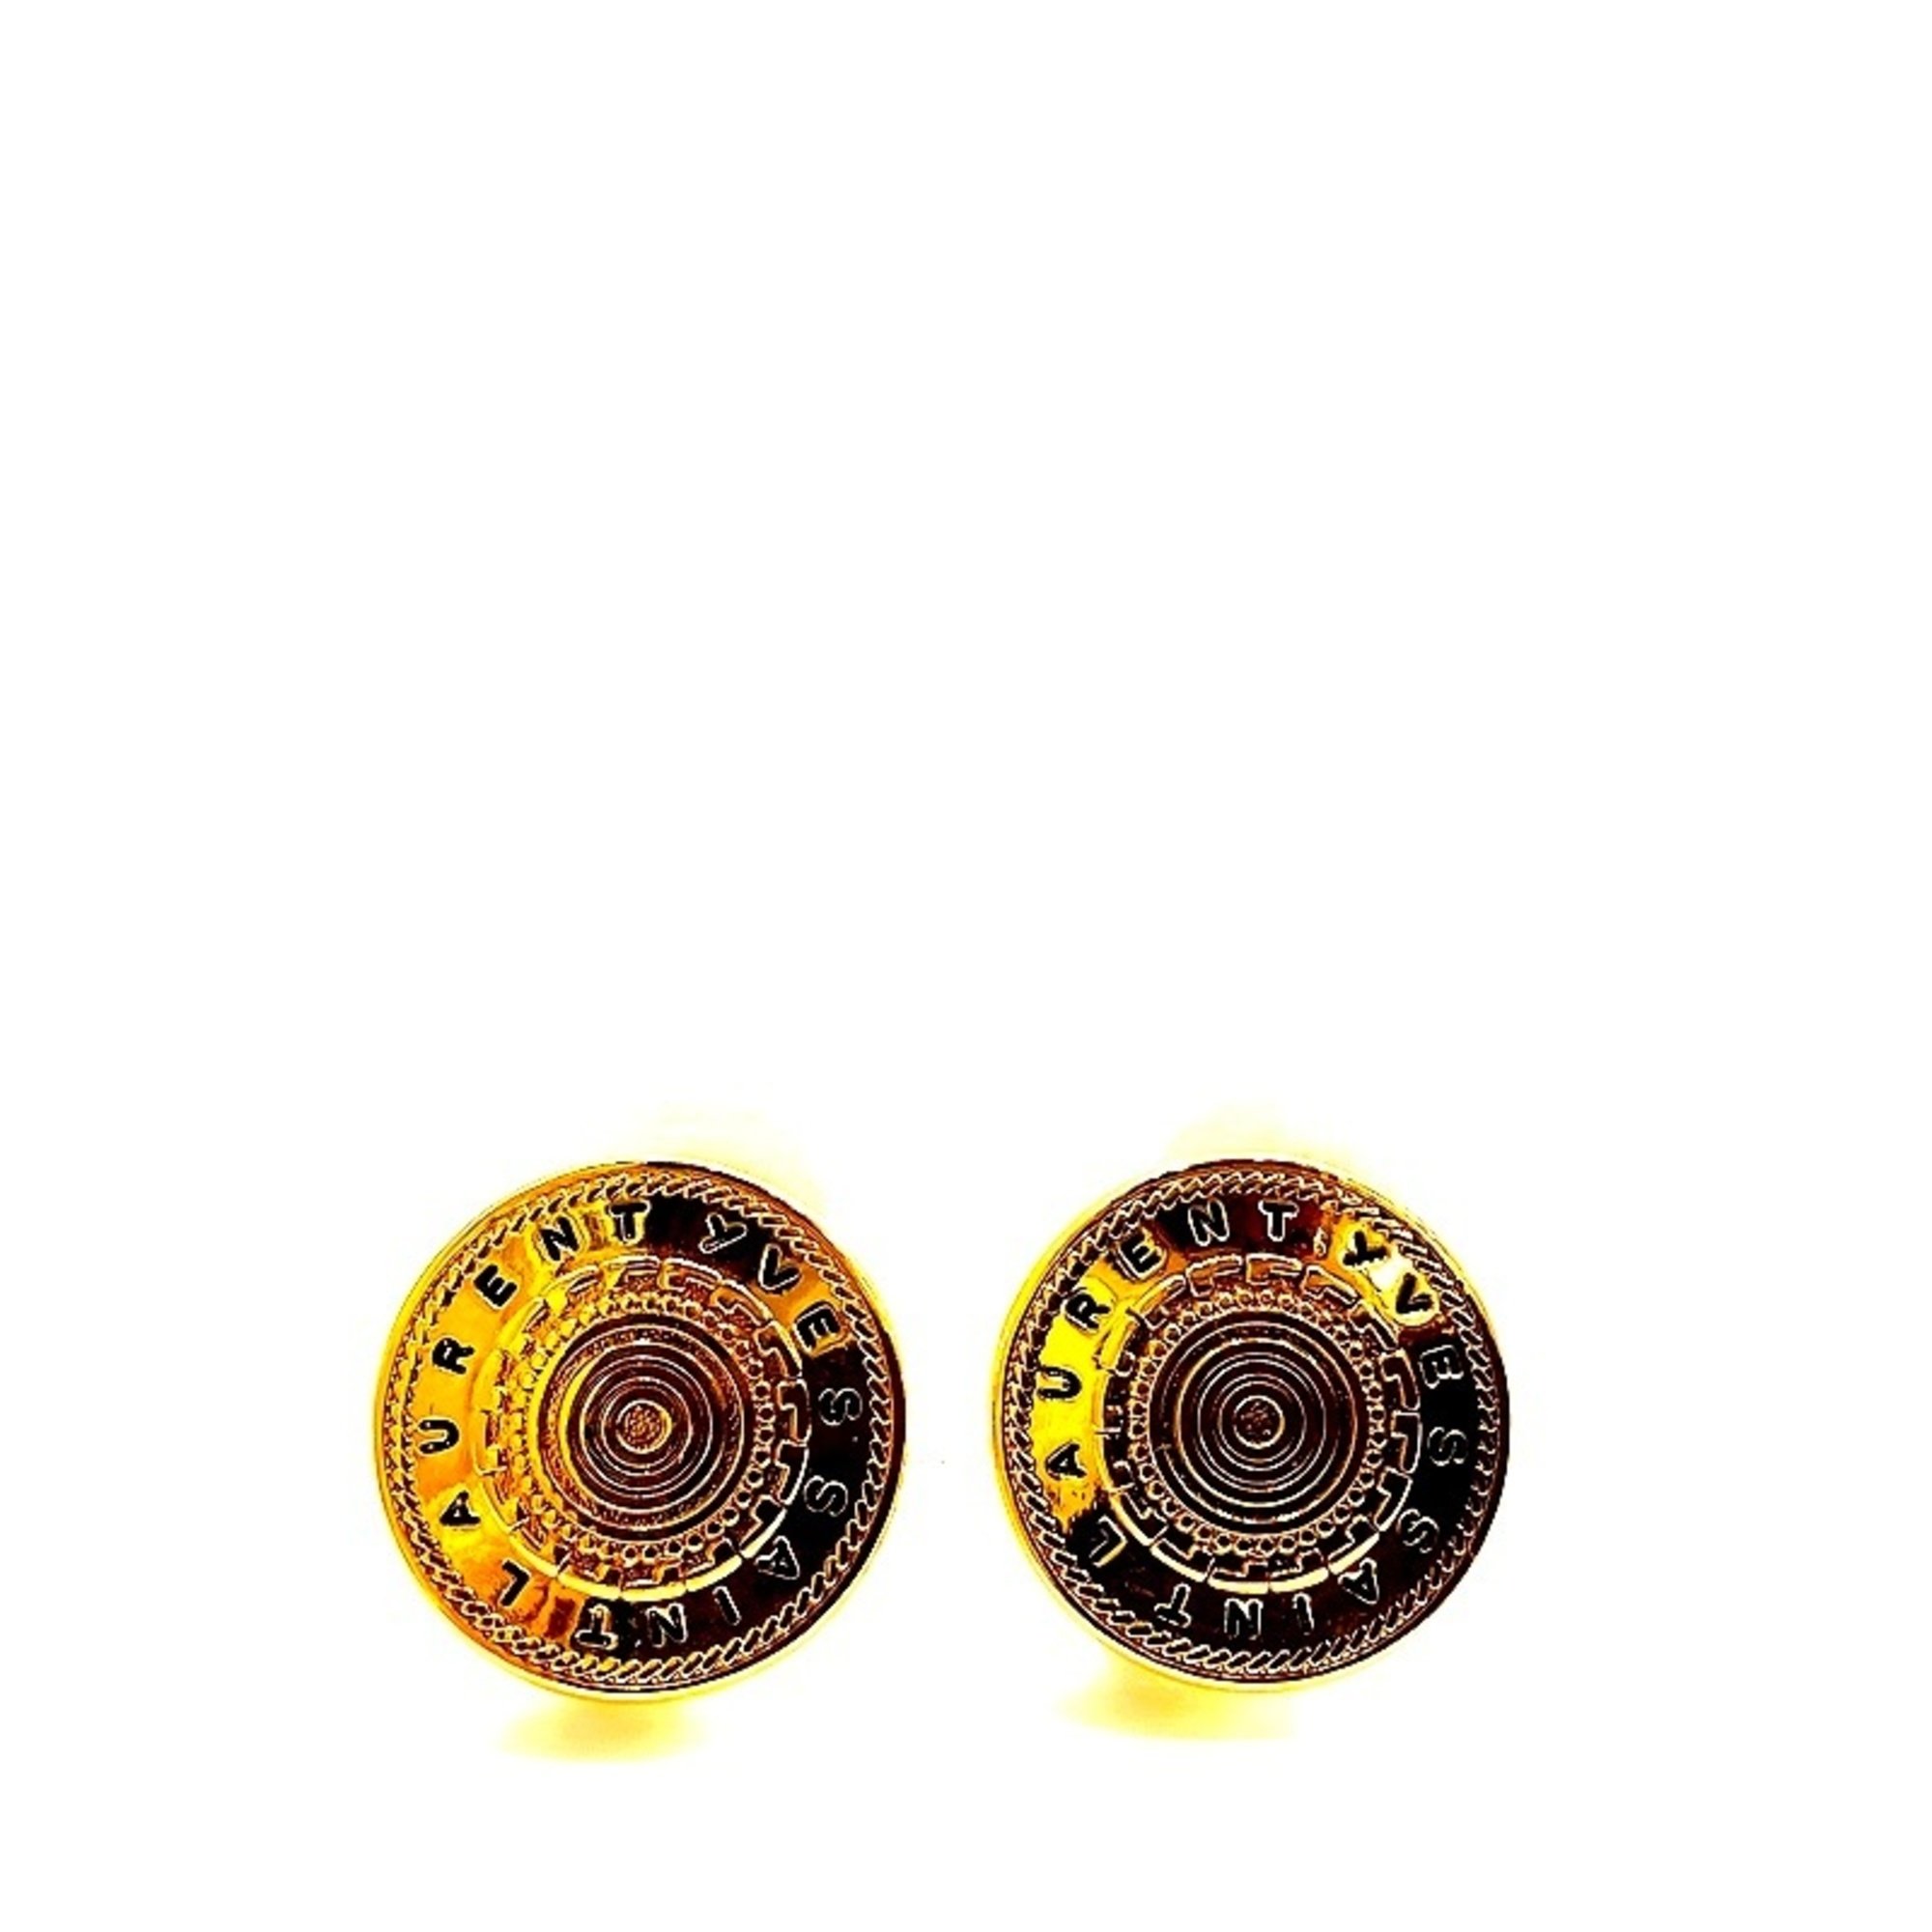 Yves Saint Laurent (YVES SAINT LAURENT) YSL Circle Necklace & Earrings Set Button Handkerchief Gold Color KB-8429